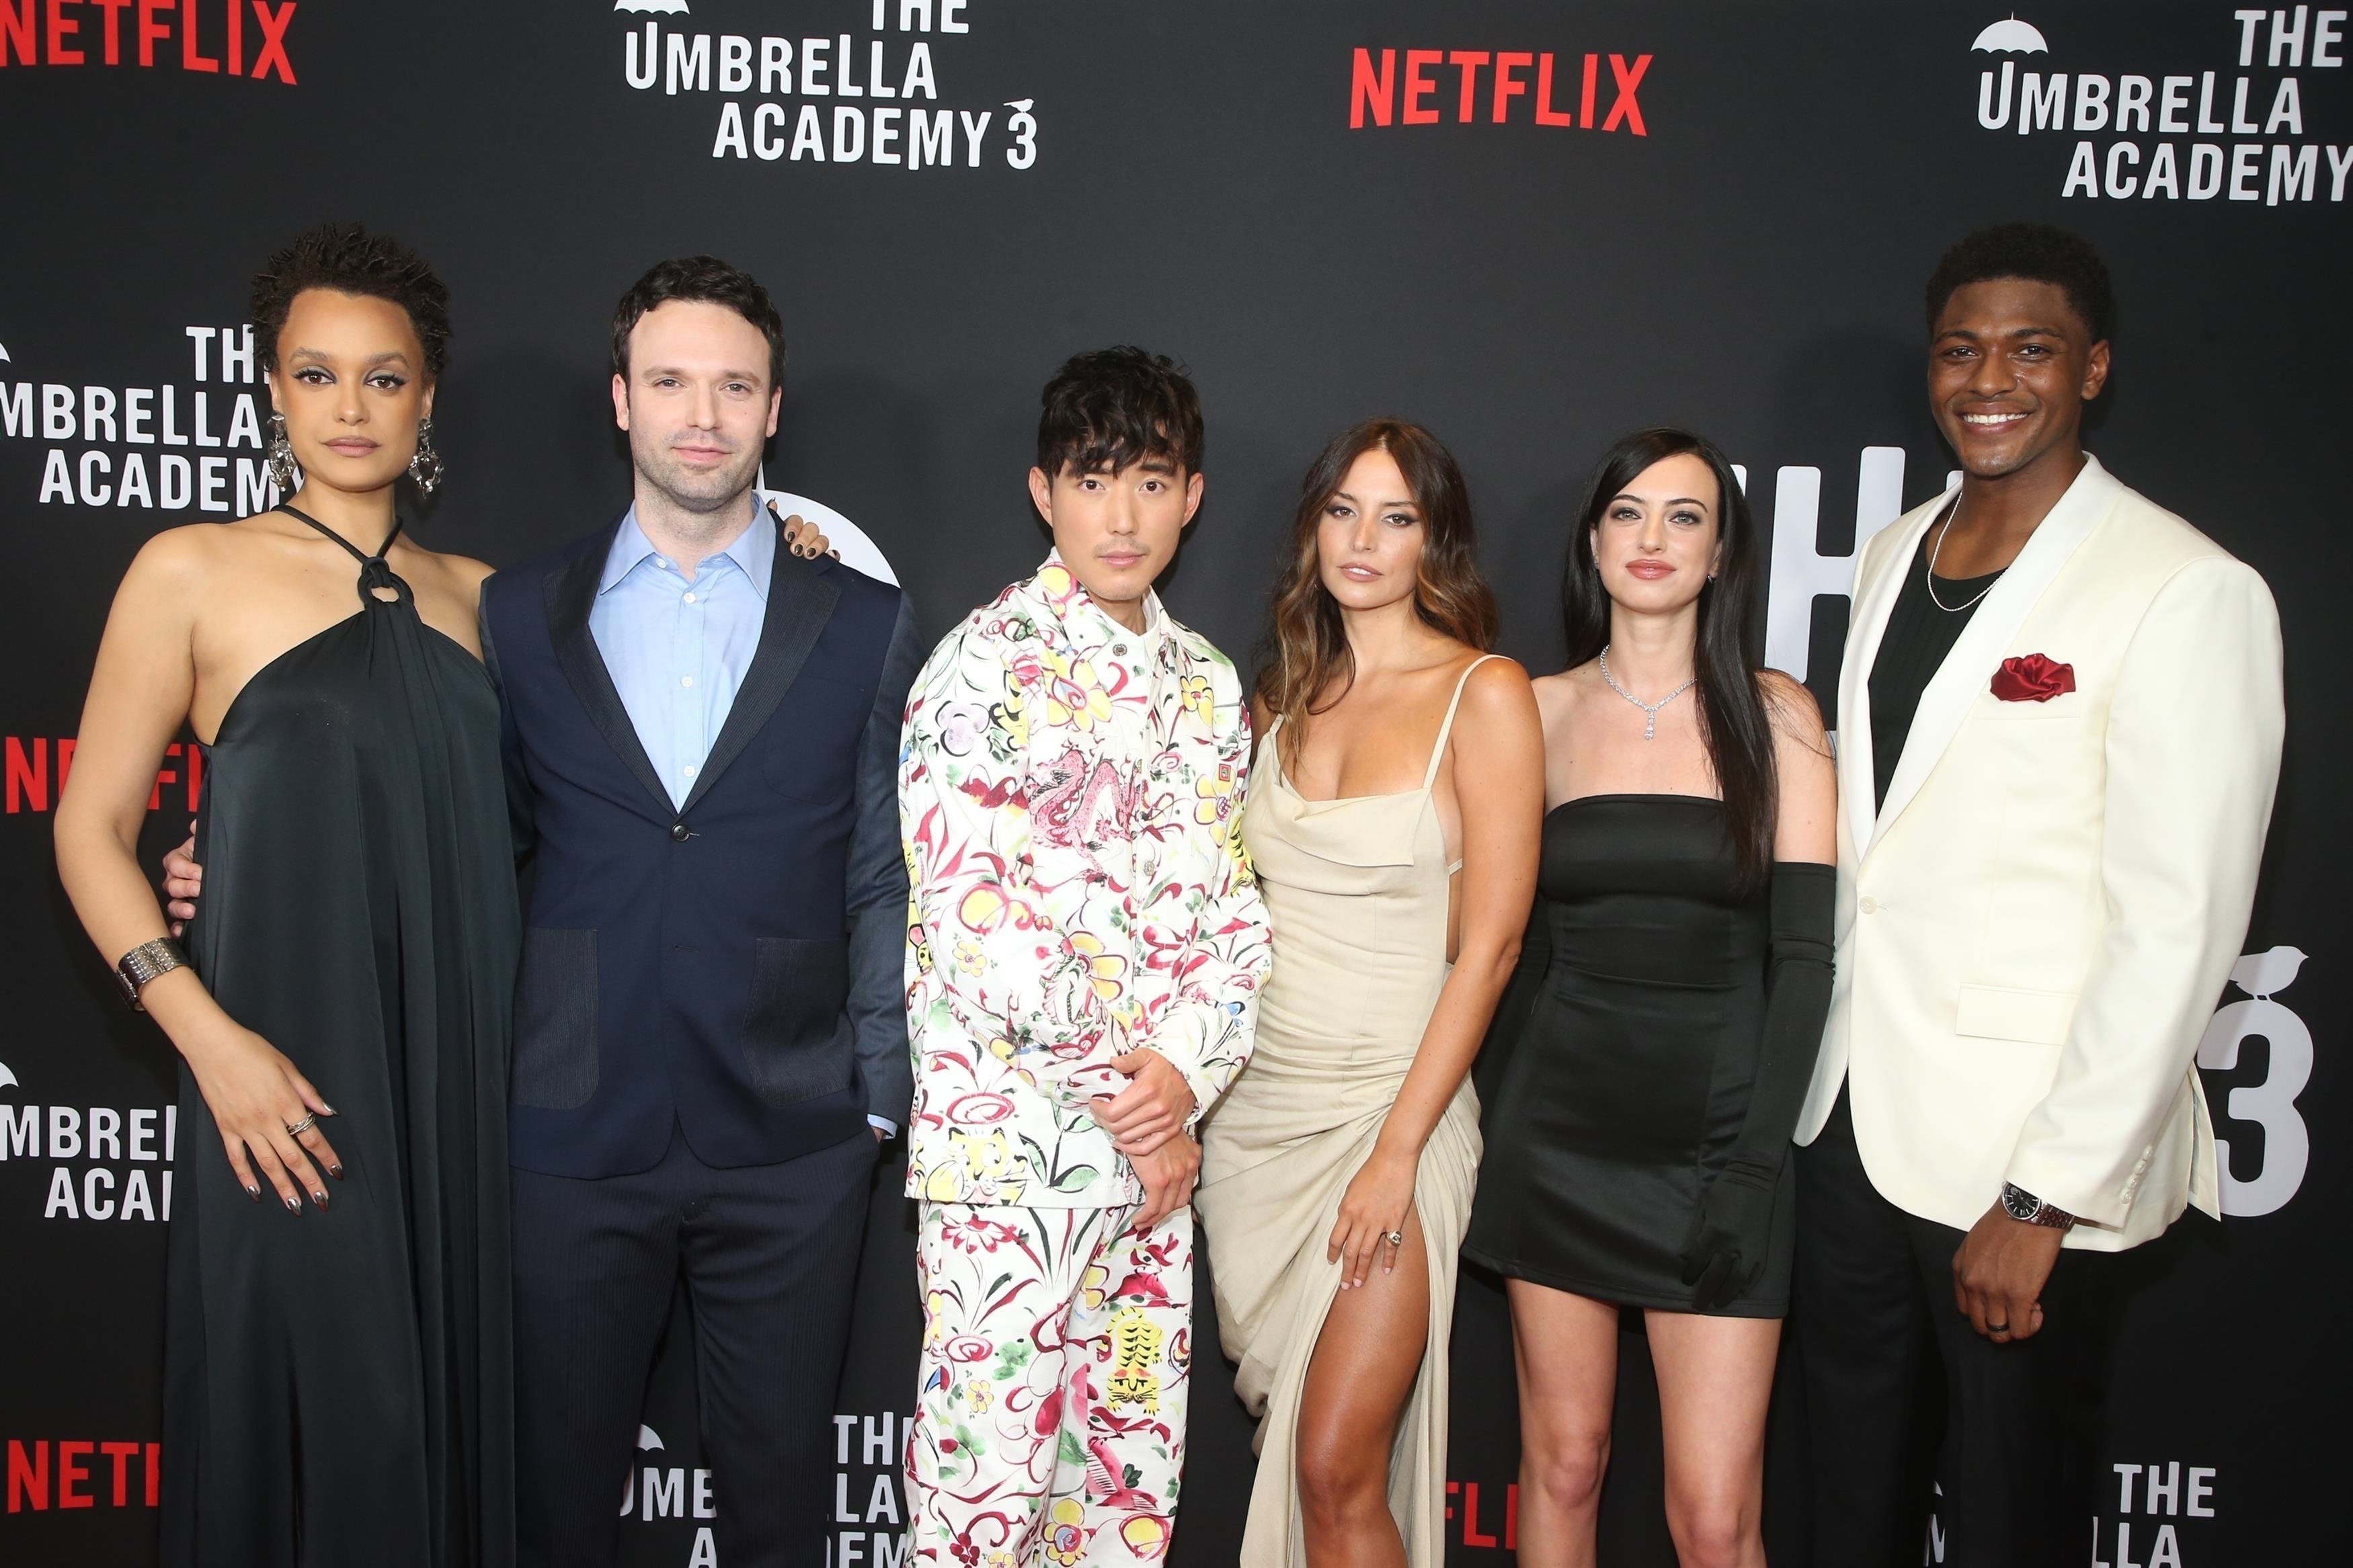 Дамы в вечерних платьях и джентльмены в «пижамном стиле» поразили зрителей на премьере Netflix